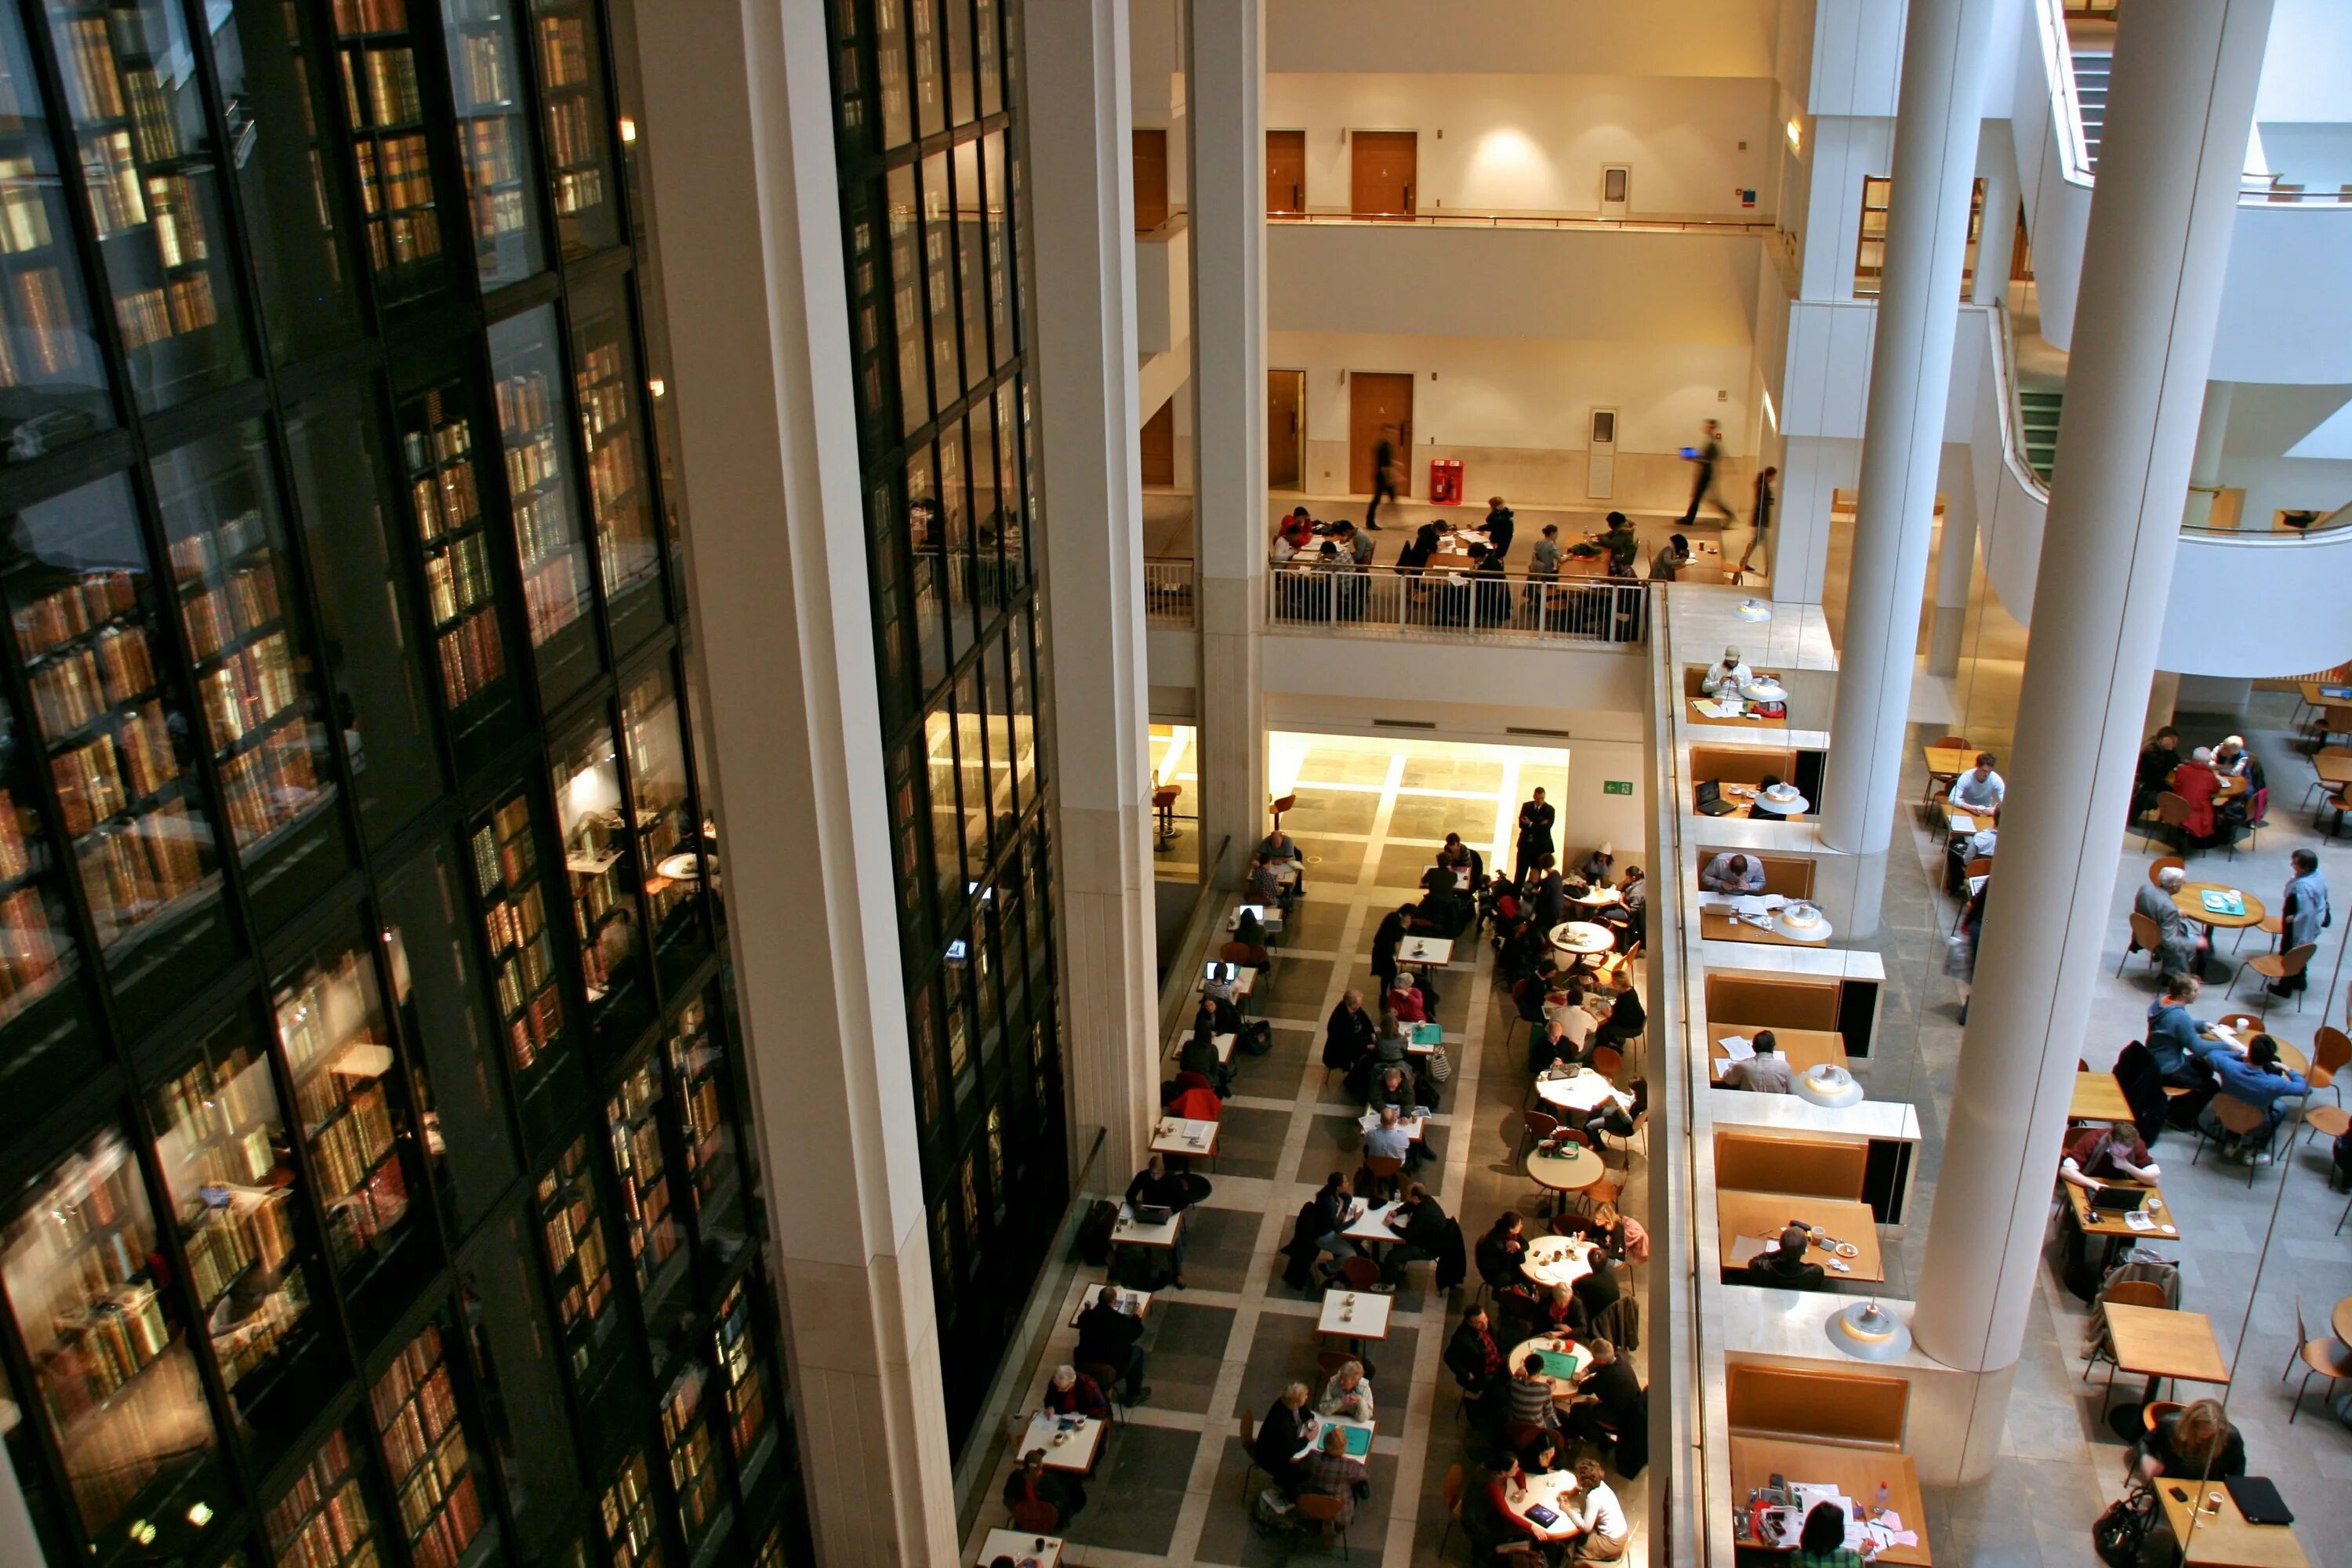 Xz library. Библиотека британского музея в Лондоне. Национальная библиотека британского музея. Национальная библиотека Лондона. Британская библиотека (British Library).